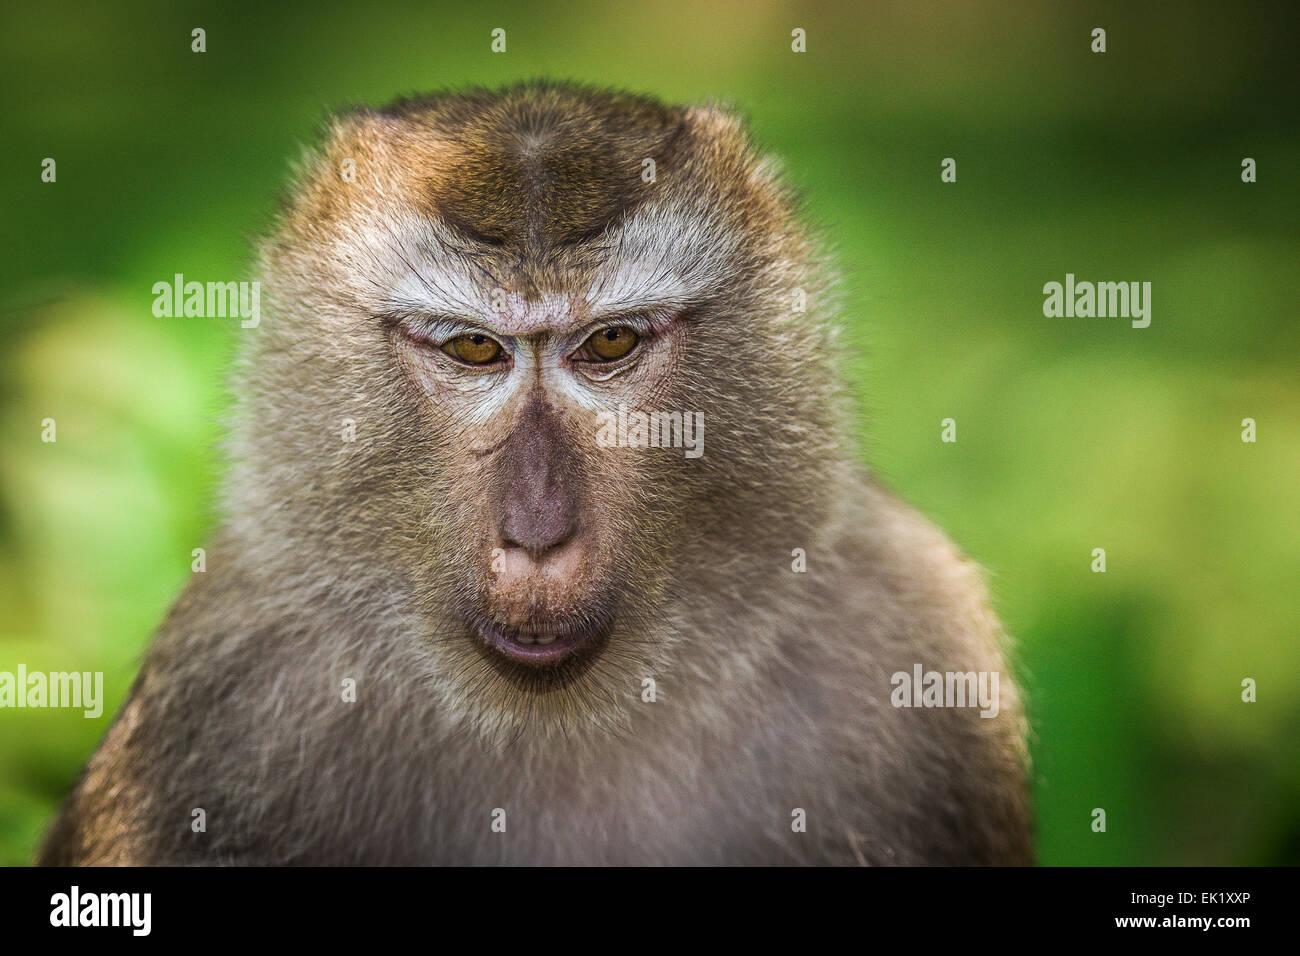 Monkey closeup portrait Banque D'Images